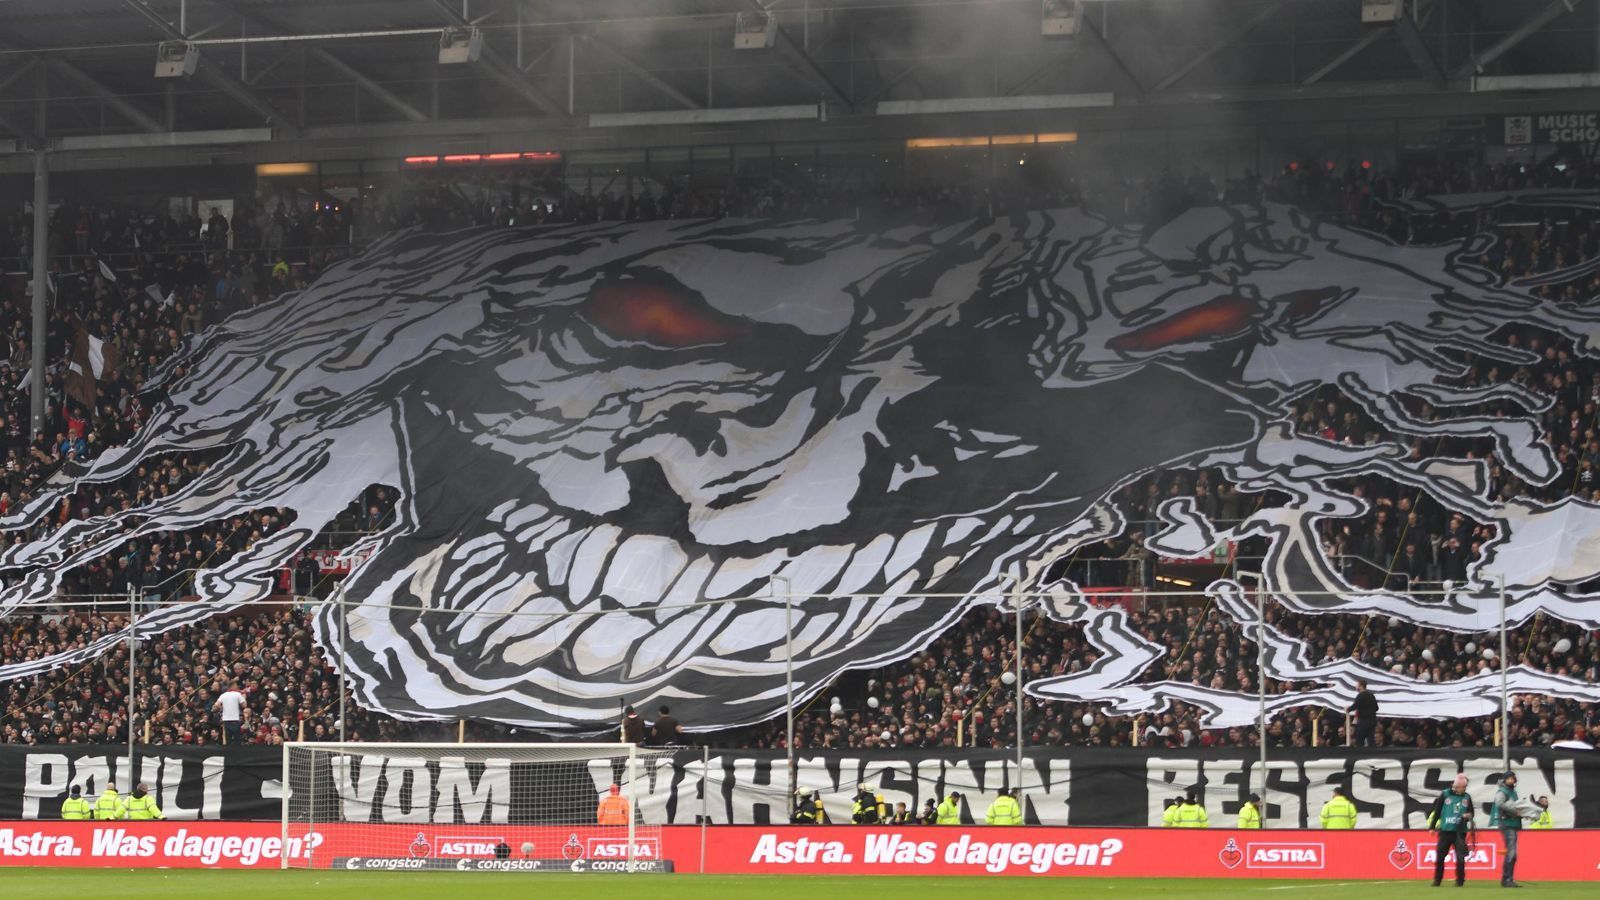 
                <strong>Hamburg-Derby - Pauli-Fans heizen dem Millerntor ein</strong><br>
                Die Choreo erstreckte sich über das ganze Stadion. Ein anderes Banner zeigte eine Teufelsfratze, dazu der Spruch: "Sankt Pauli - vom Wahnsinn besessen".
              